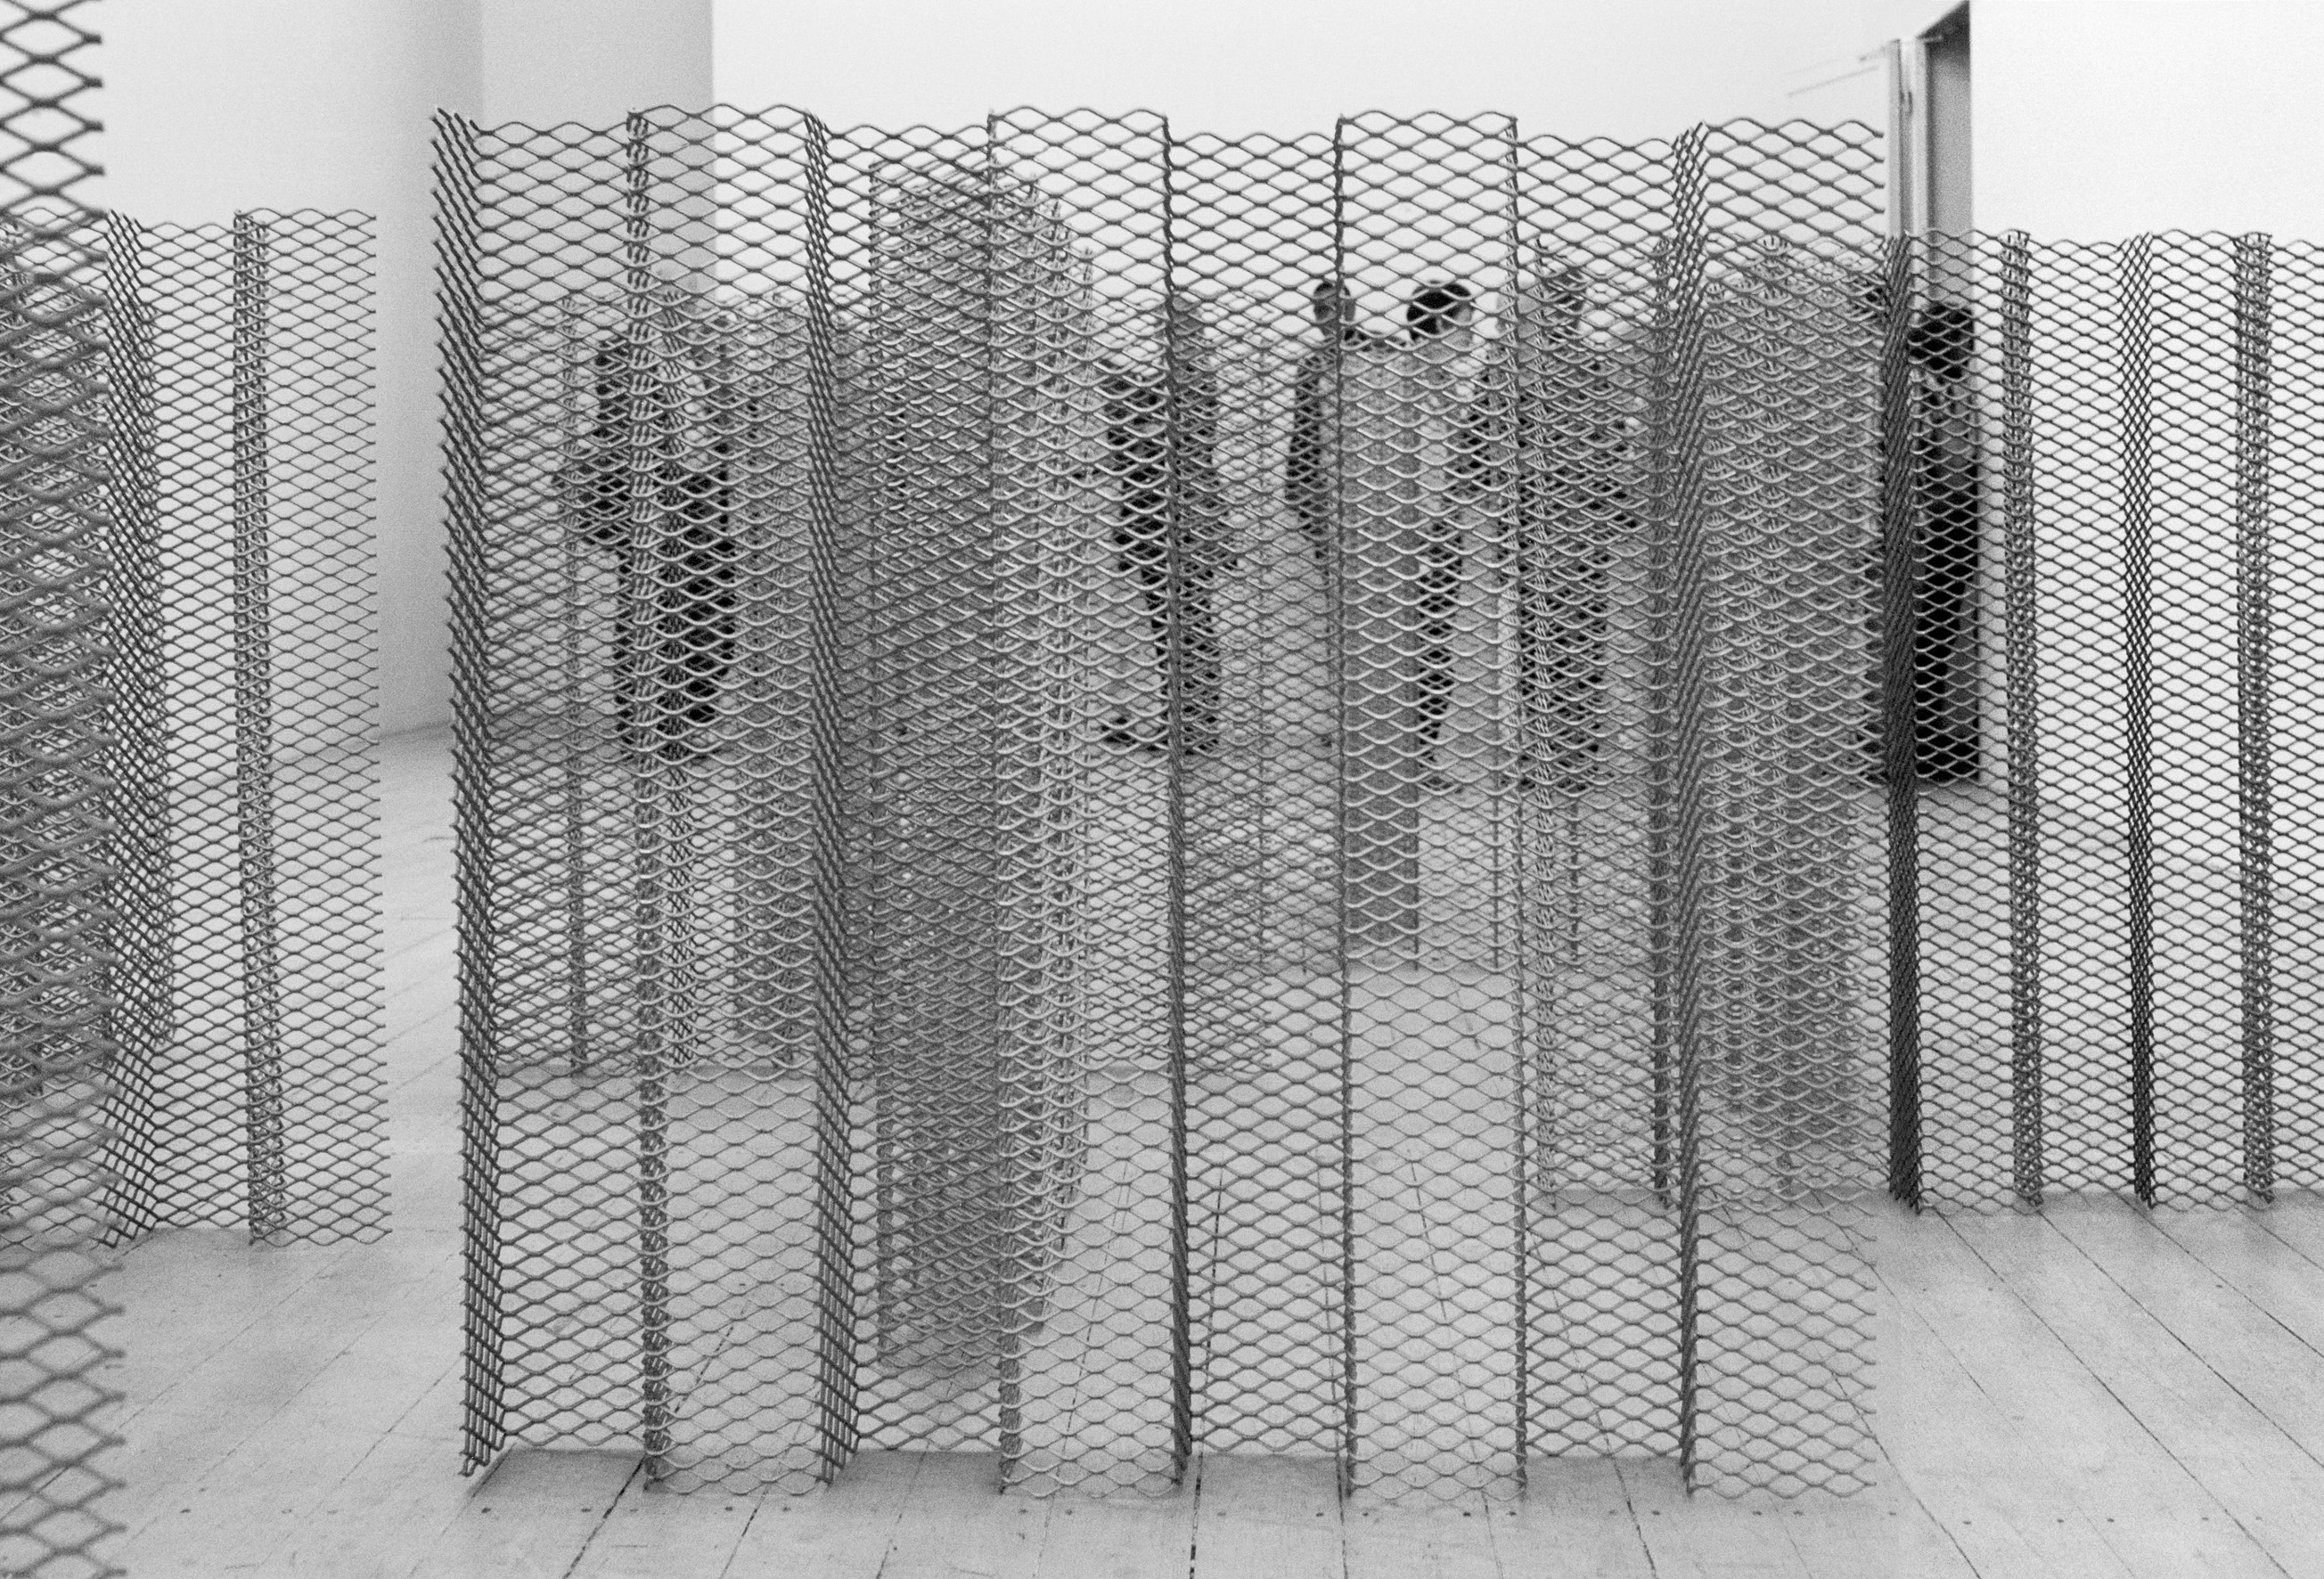 Robert Morris (1931–2018) Untitled, 1968 Streck-Aluminium, 16 Teile, je 124 x 130 x 16 cm Hamburger Kunsthalle, Schenkung Susanne & Michael Liebelt, Hamburg © VG Bild-Kunst, Bonn 2021 Foto: Olaf Pascheit